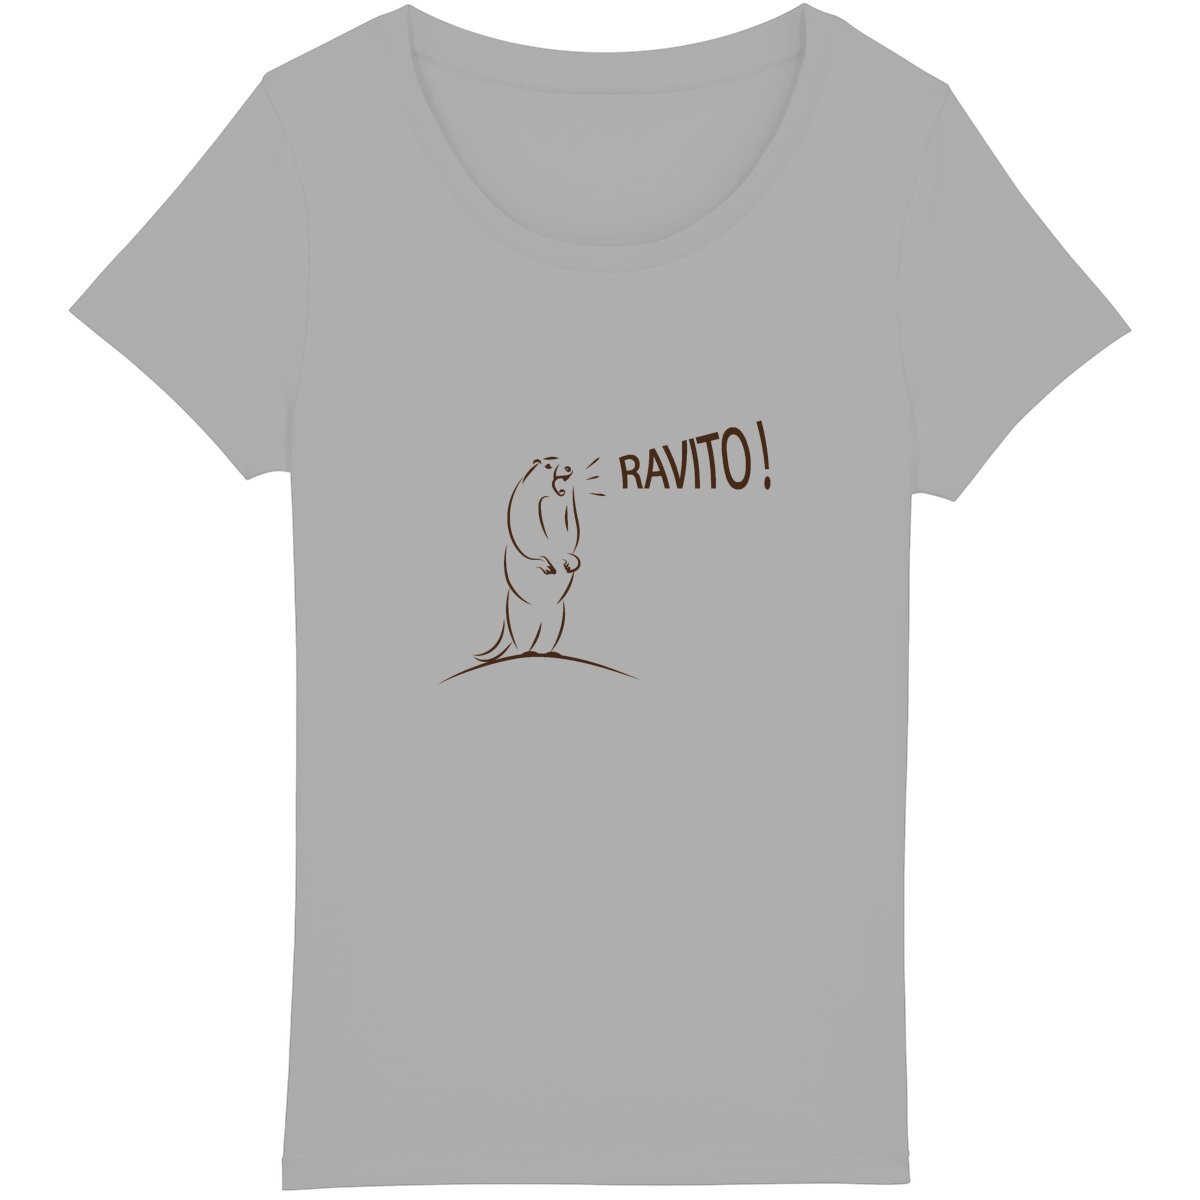 T-shirt running femme avec message "Ravito" et marmotte joyeuse